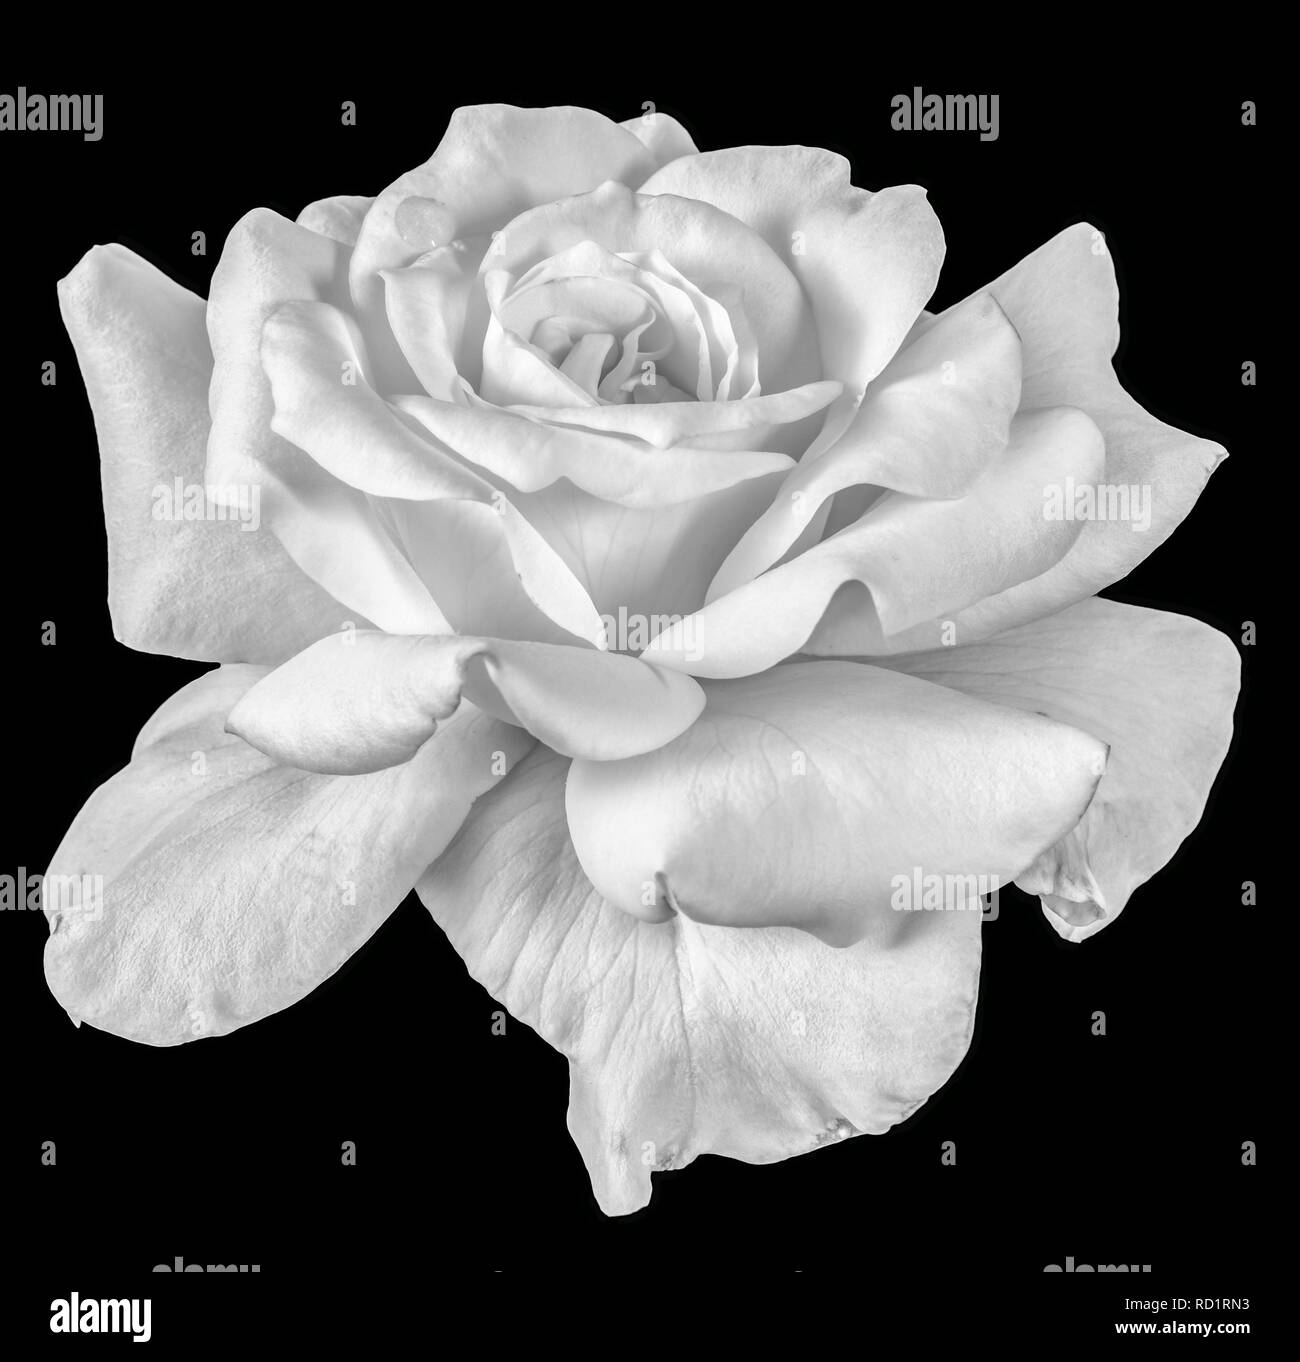 Fine art nature morte de fleurs monochromes Vue de face photo macro d'une rose blanche fleur avec texture détaillées sur fond noir Banque D'Images